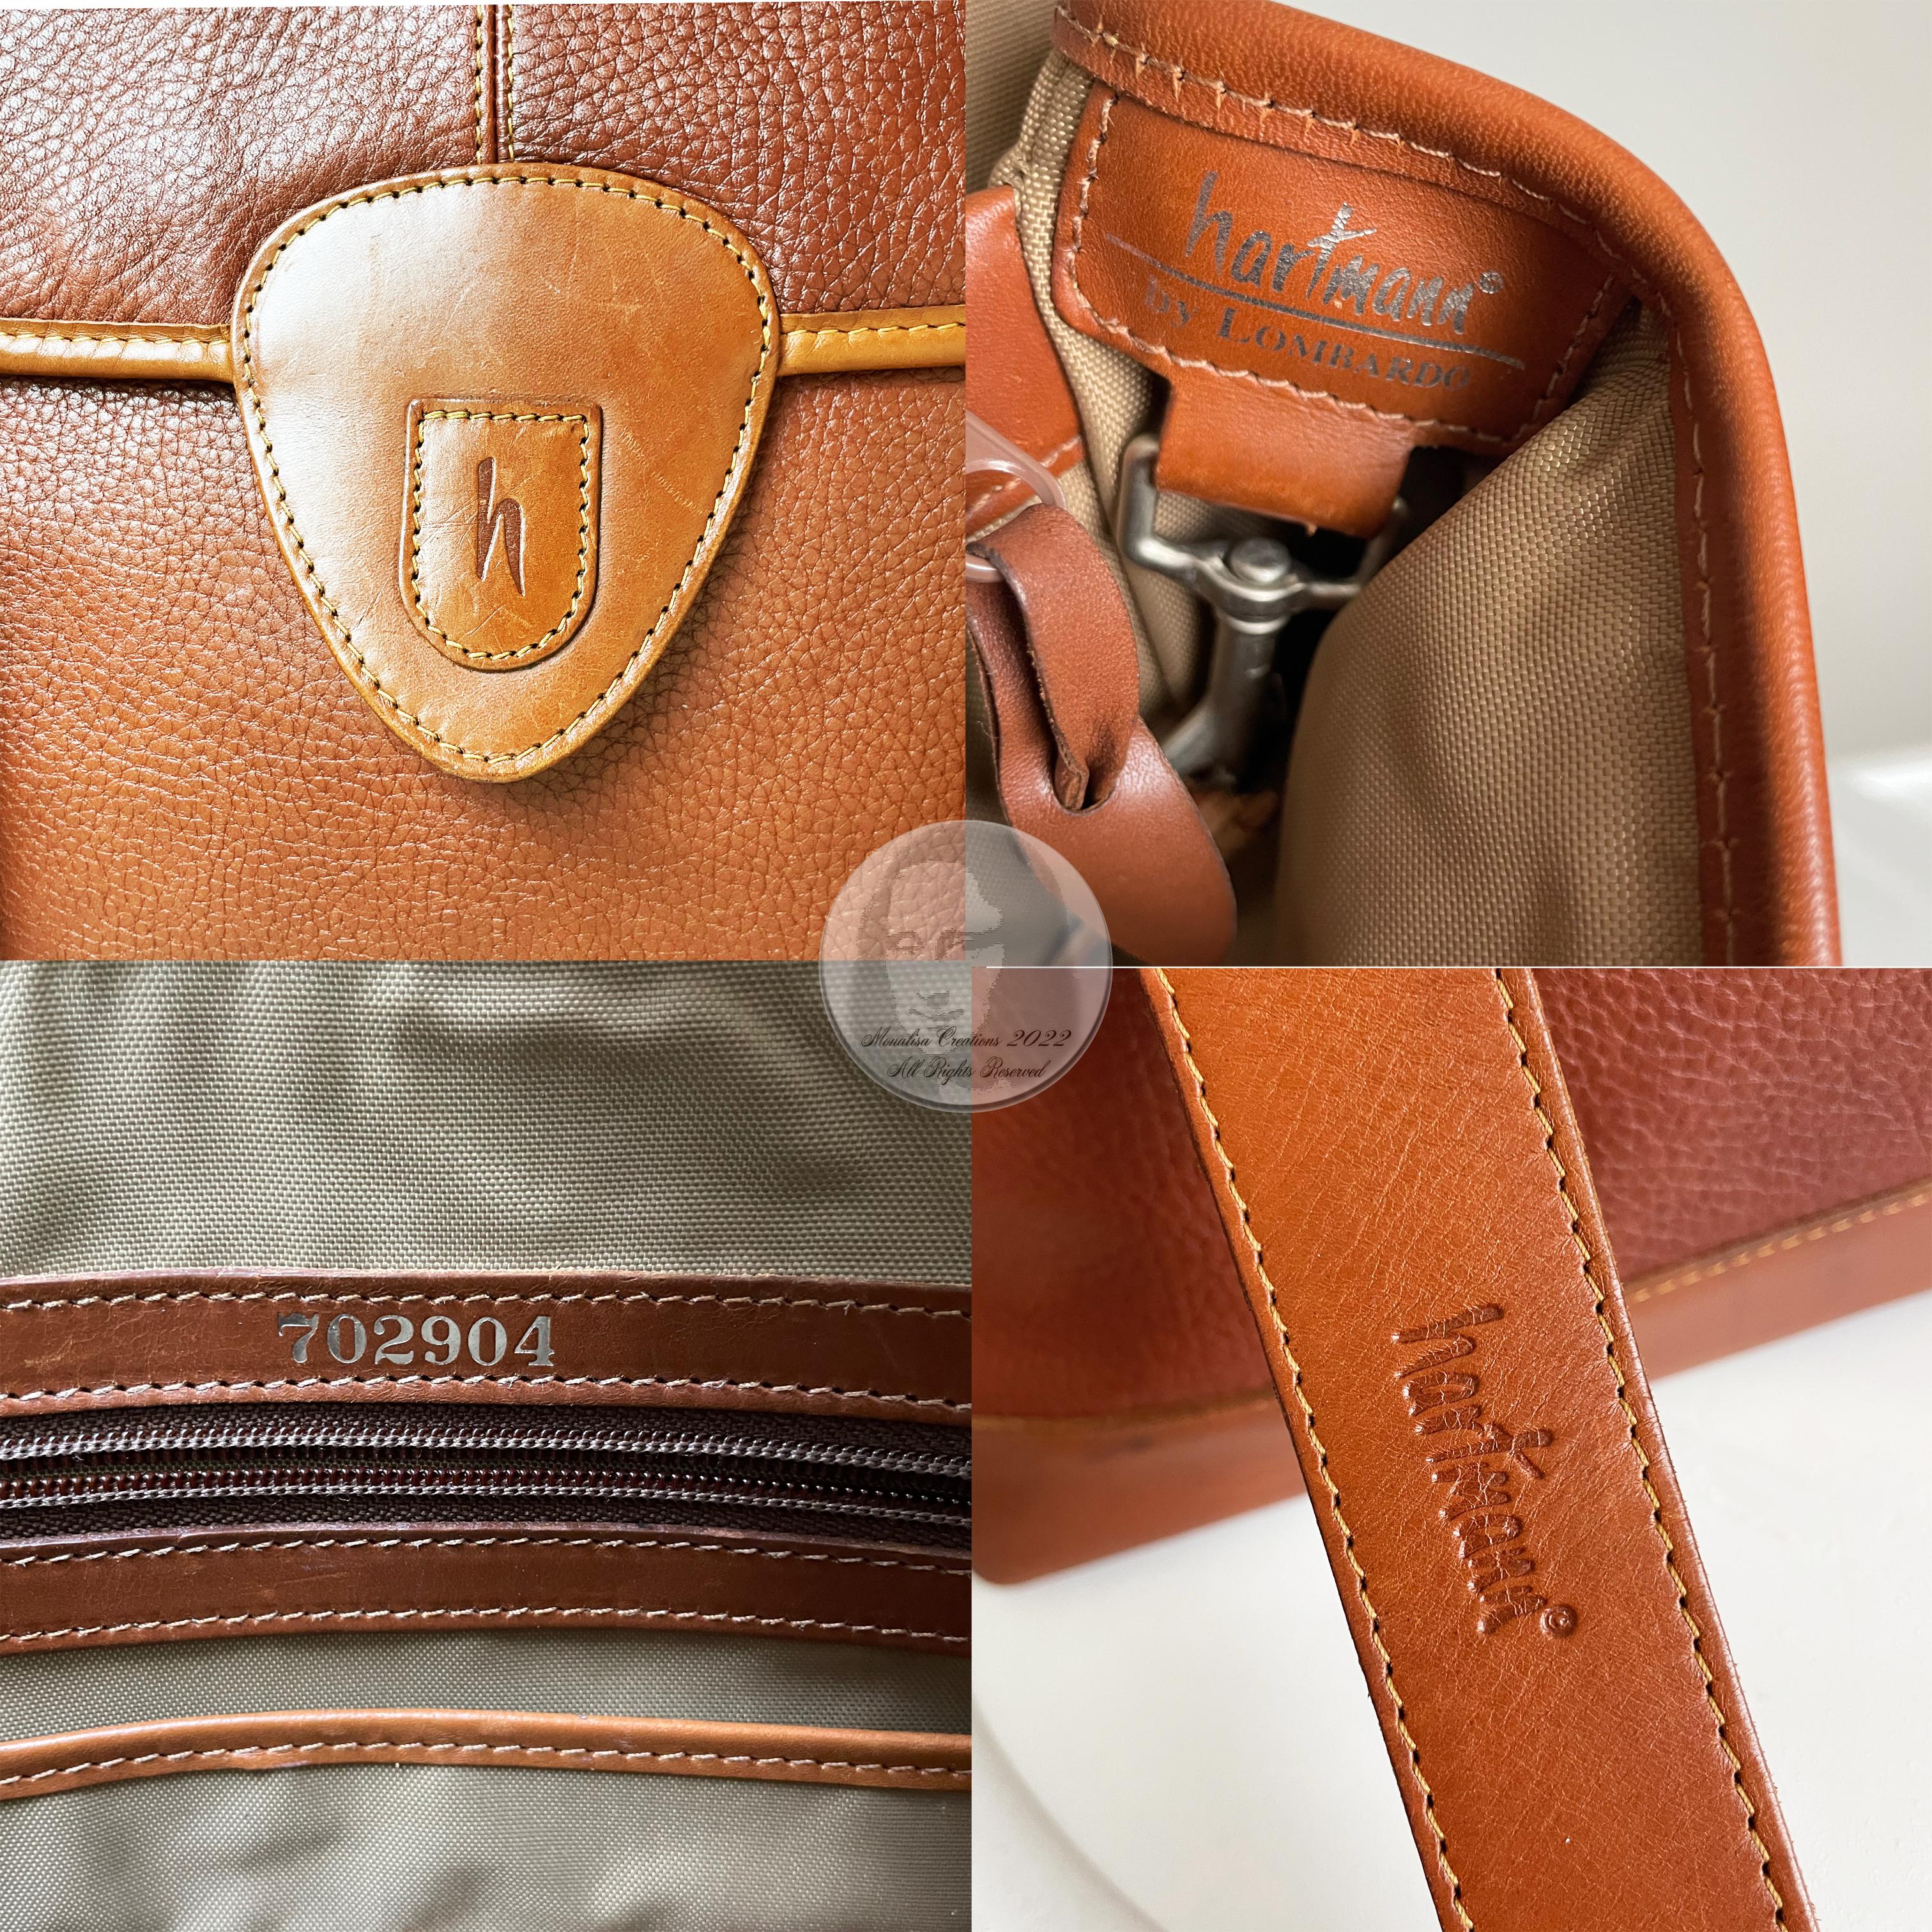 Hartmann Business Bag Briefcase Computer or Shoulder Bag British Tan Leather 10